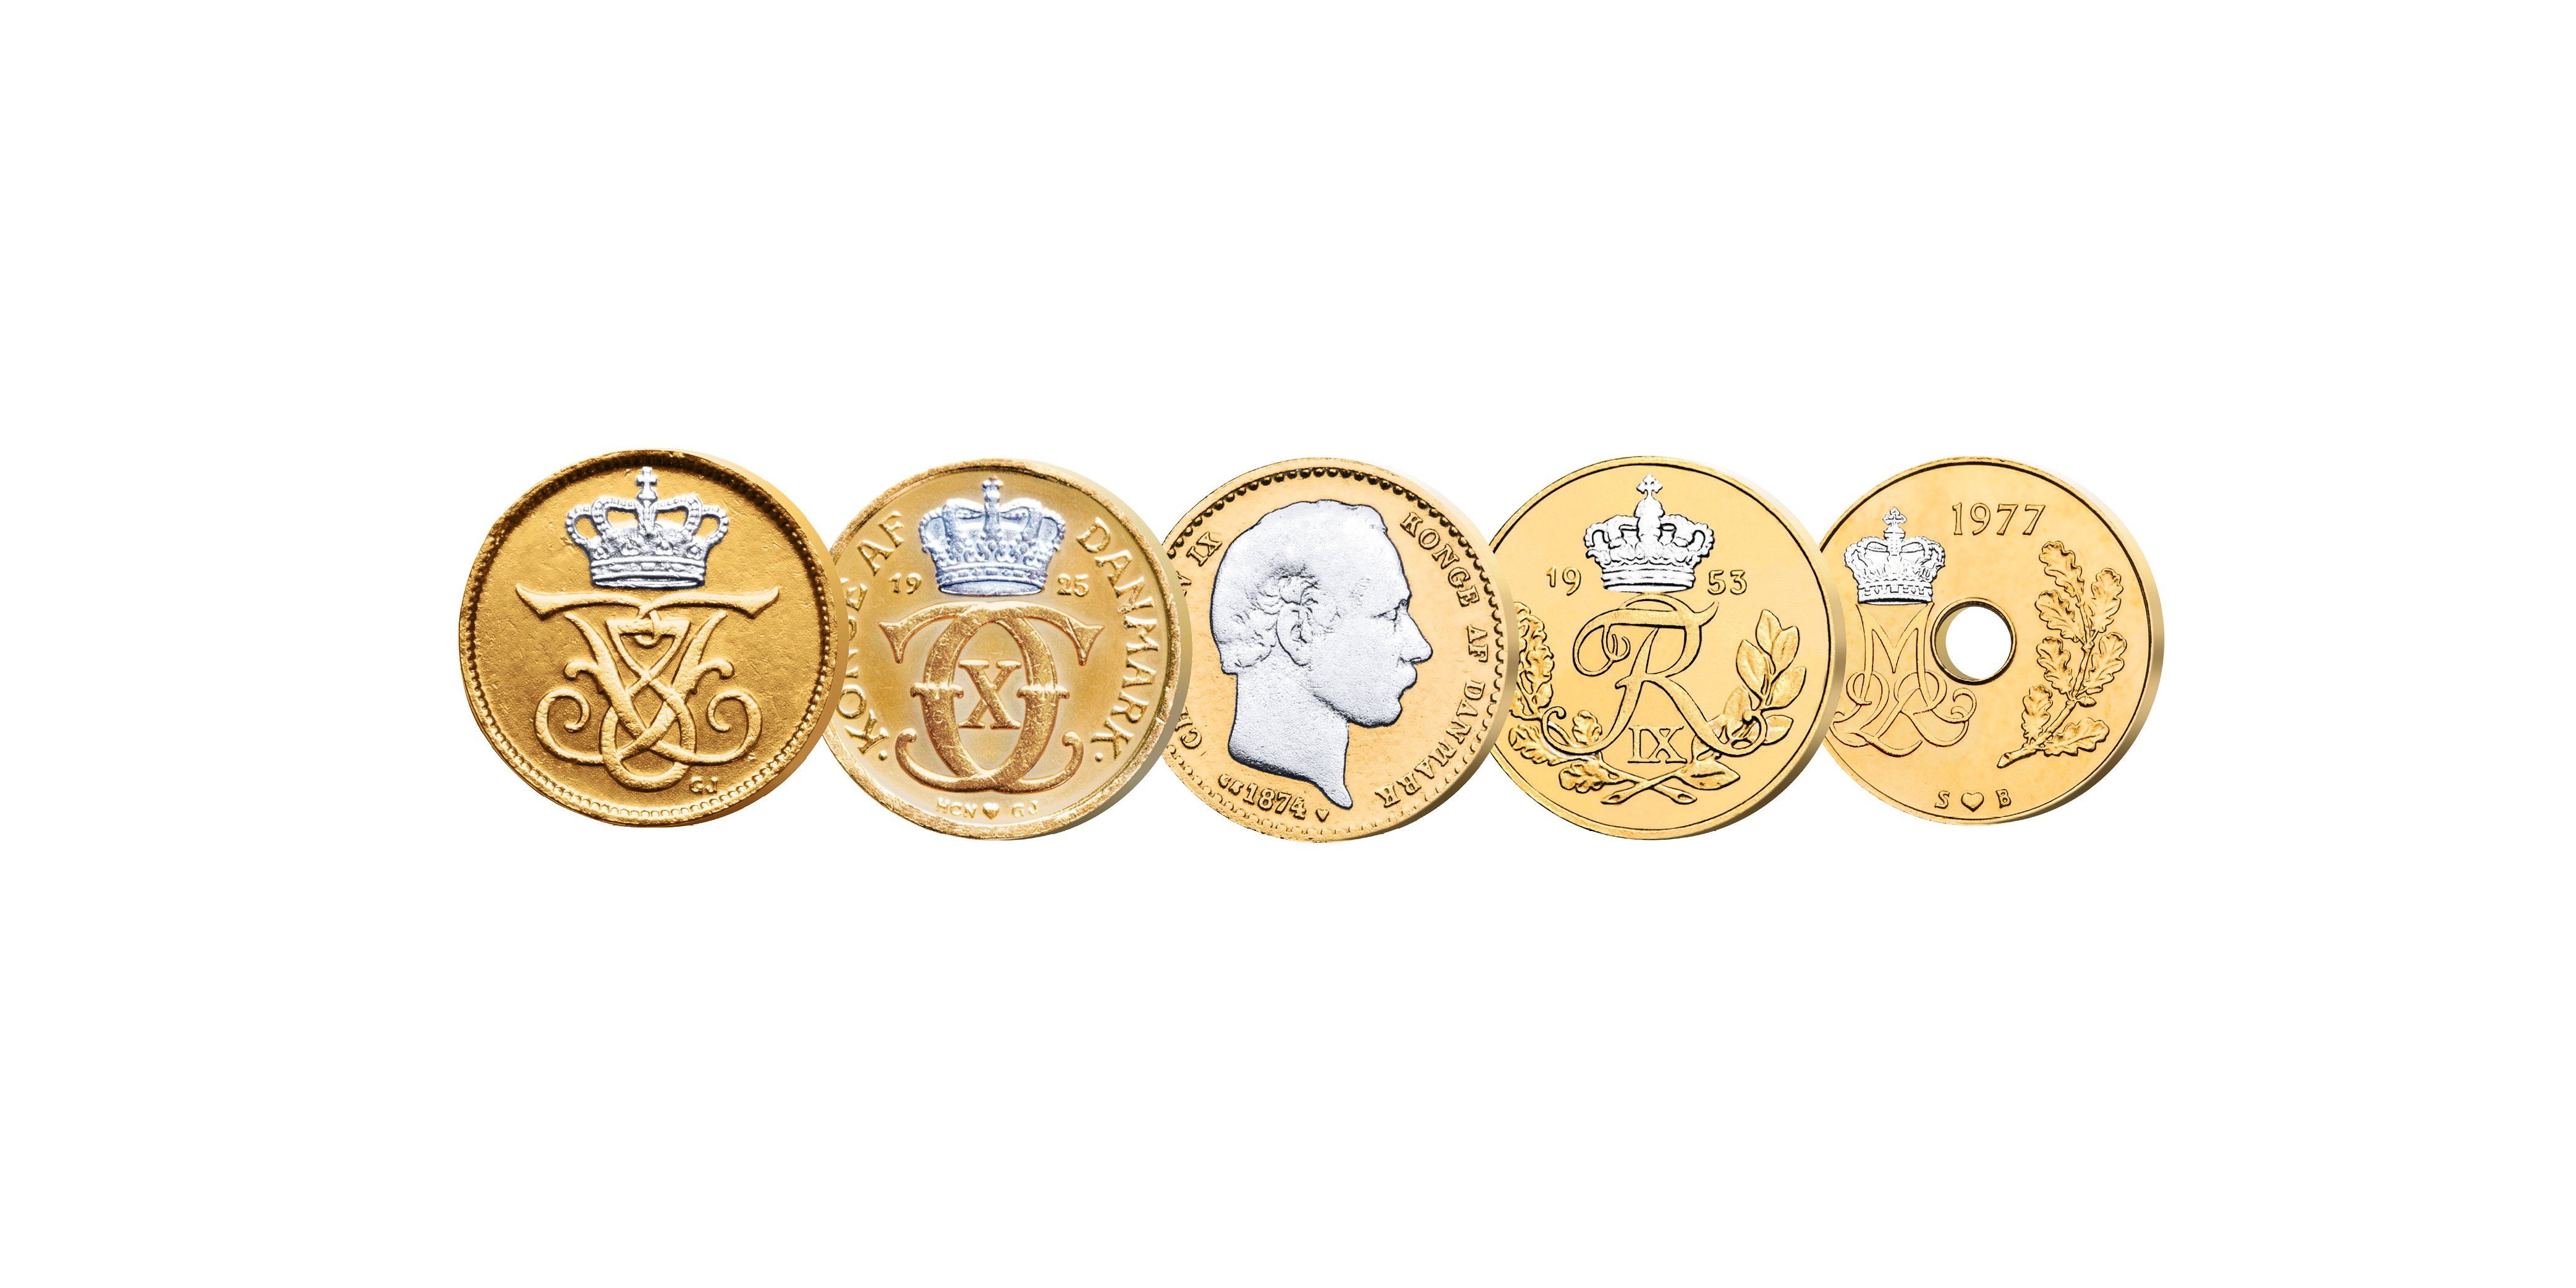 Øremønterne er udgivet under 5 danske Glücksborgs regenter - Christian IX, Frederik VIII, Christian X, Frederik IX og Margrethe II. Alle øremønterne er blevet belagt med guld og platin.